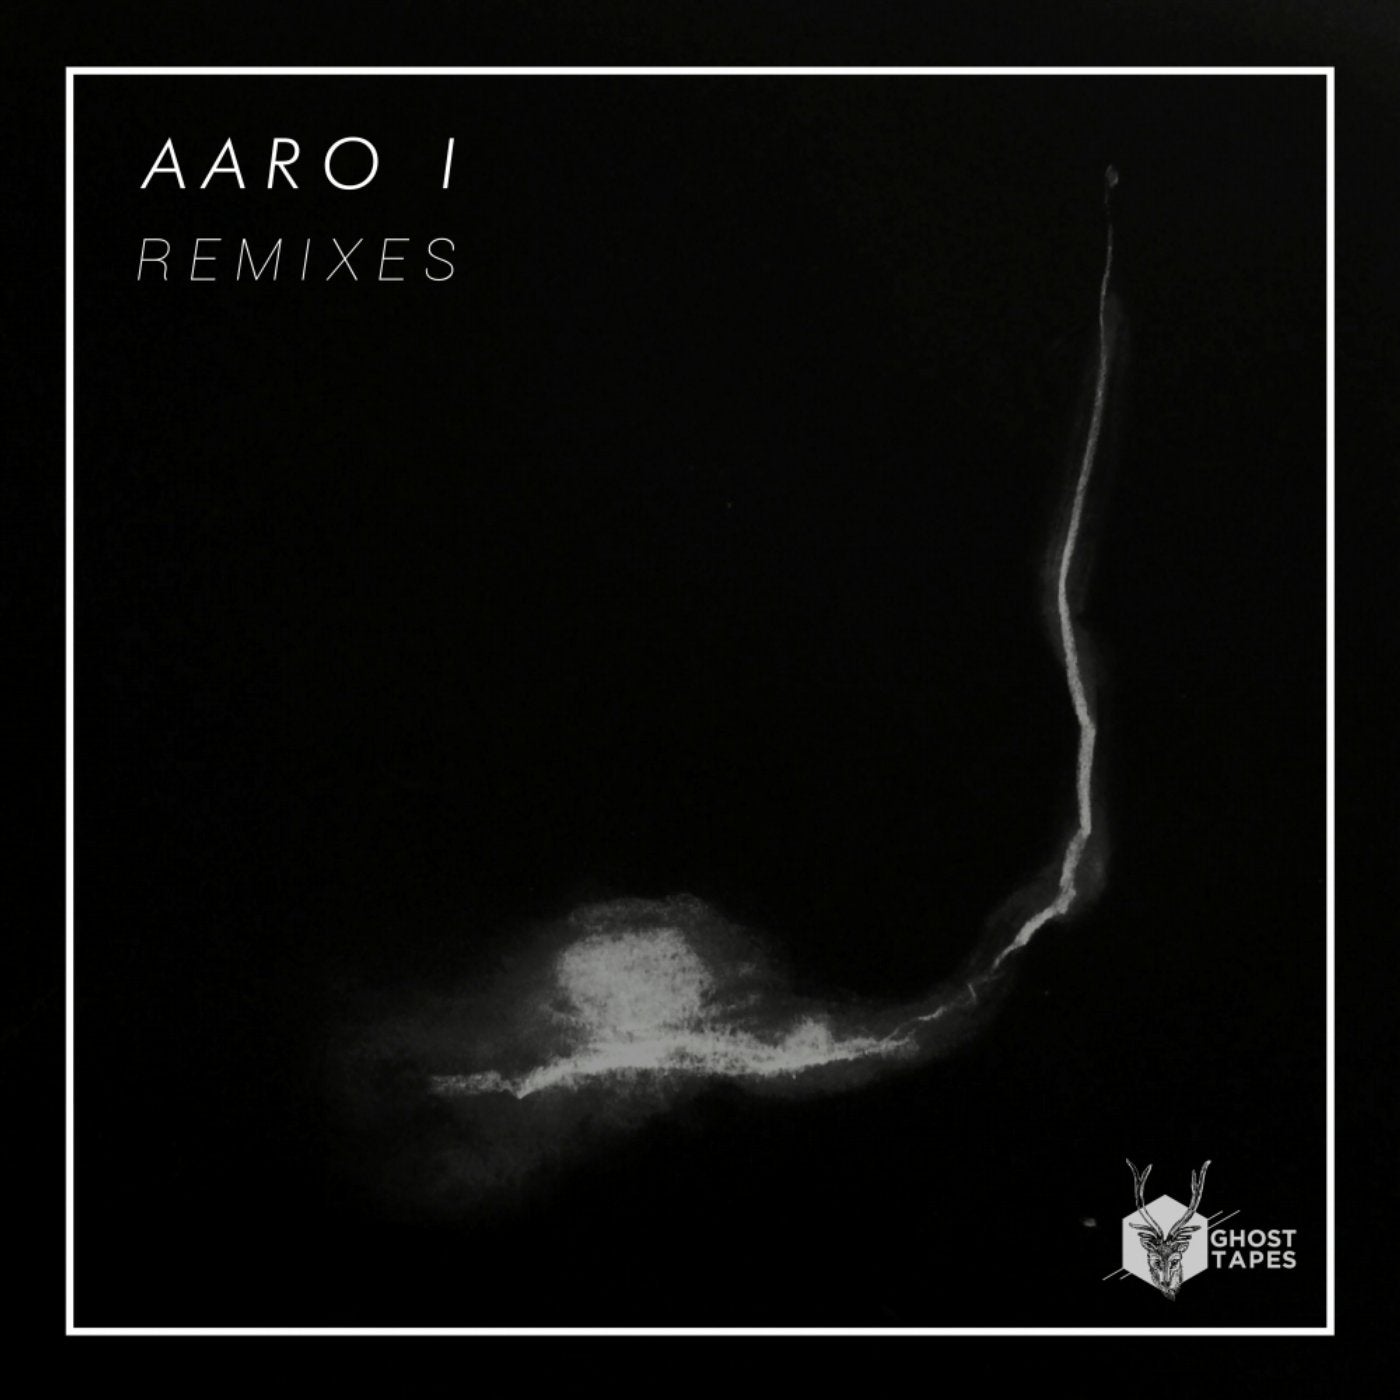 AARO I Remixes